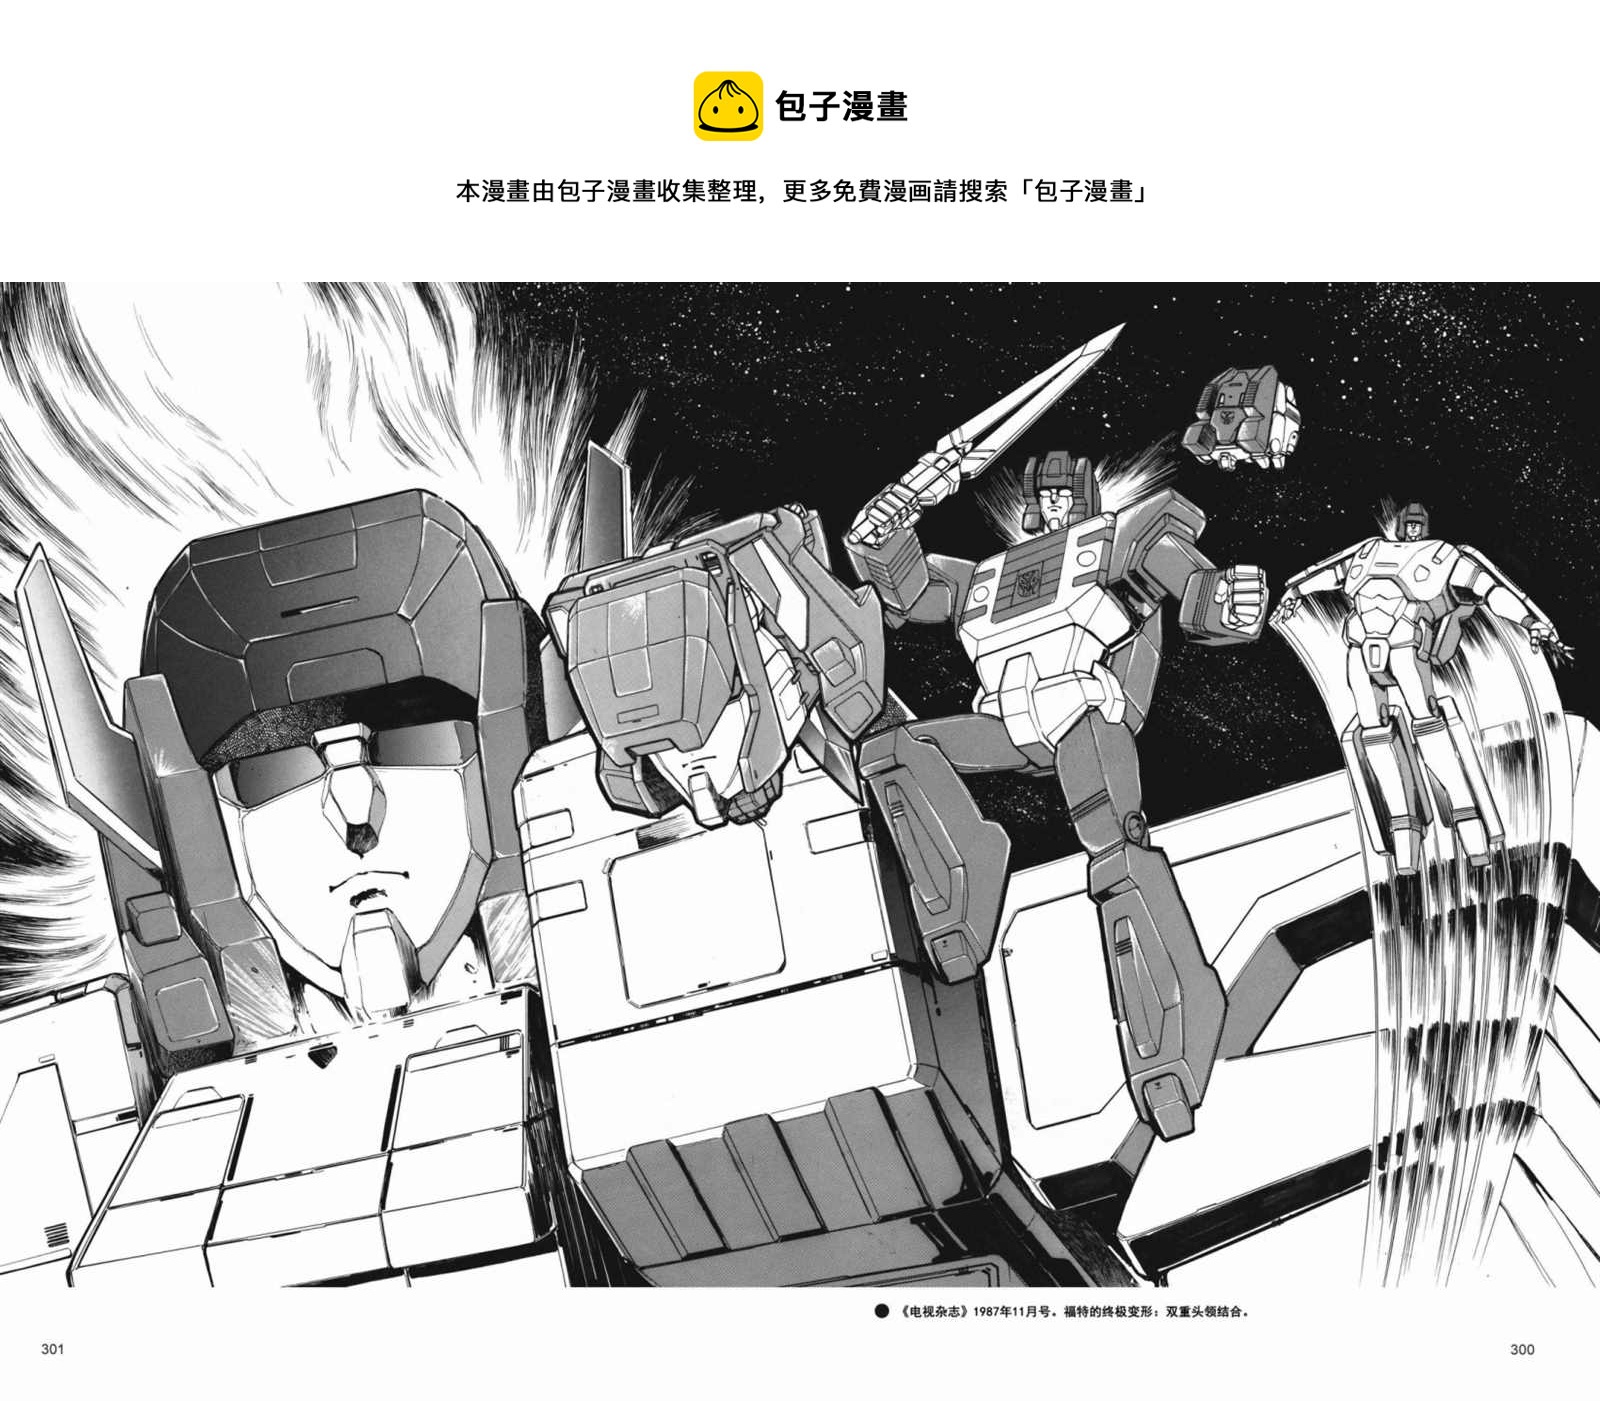 變形金剛日版G1雜誌插畫 - 變形金剛：頭領戰士 - 5